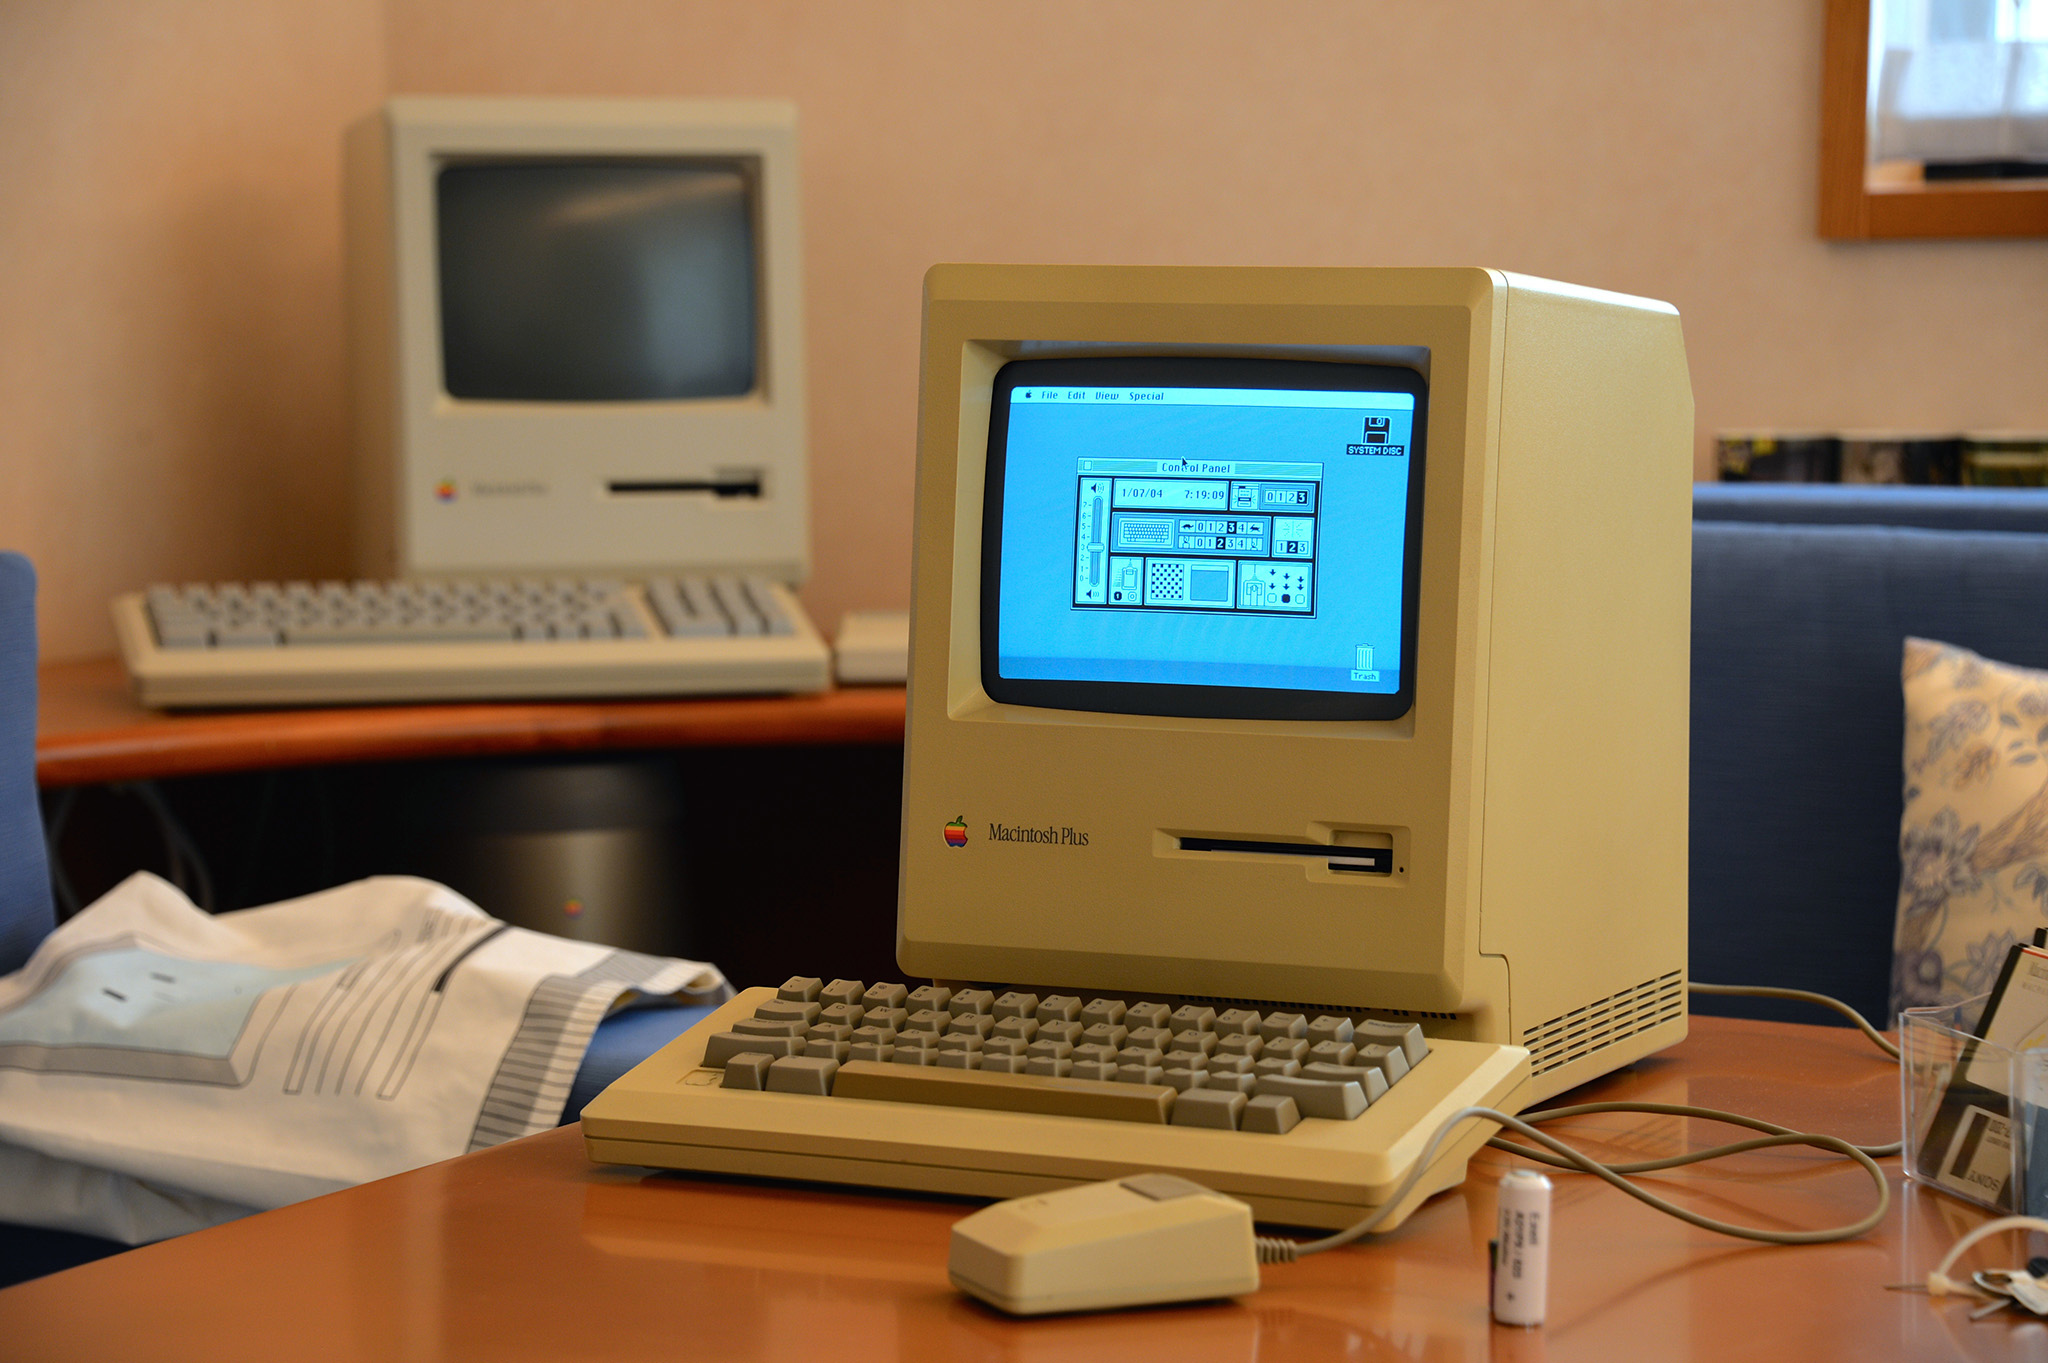 Macintosh Plus, prvo osvježenje originalnog Macintosha, predstavljeno je 1986. godine. Apple je dodao SCSI utor i proširio memoriju, a Macintosh Plus je značajan po tome što je to kompjuter koji je Apple najdulje proizvodio.